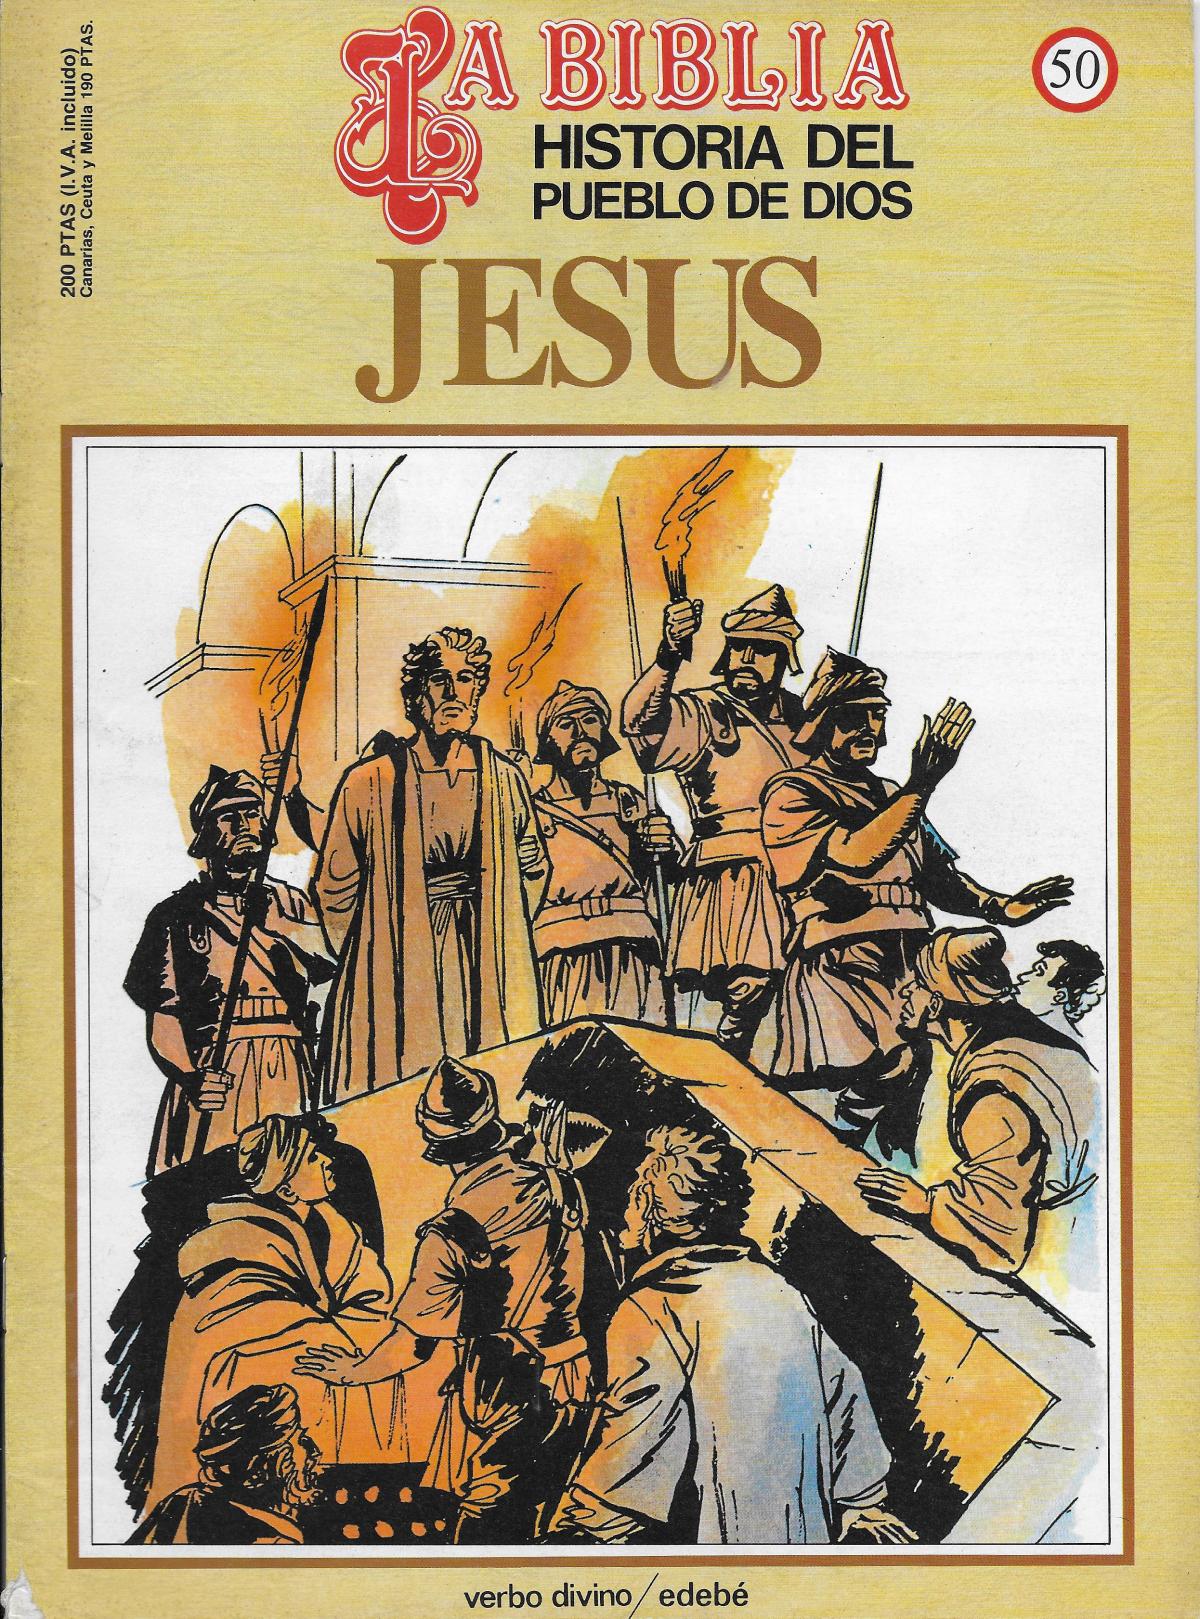 Historia del Pueblo de Dios. Reedition 50. Jesus